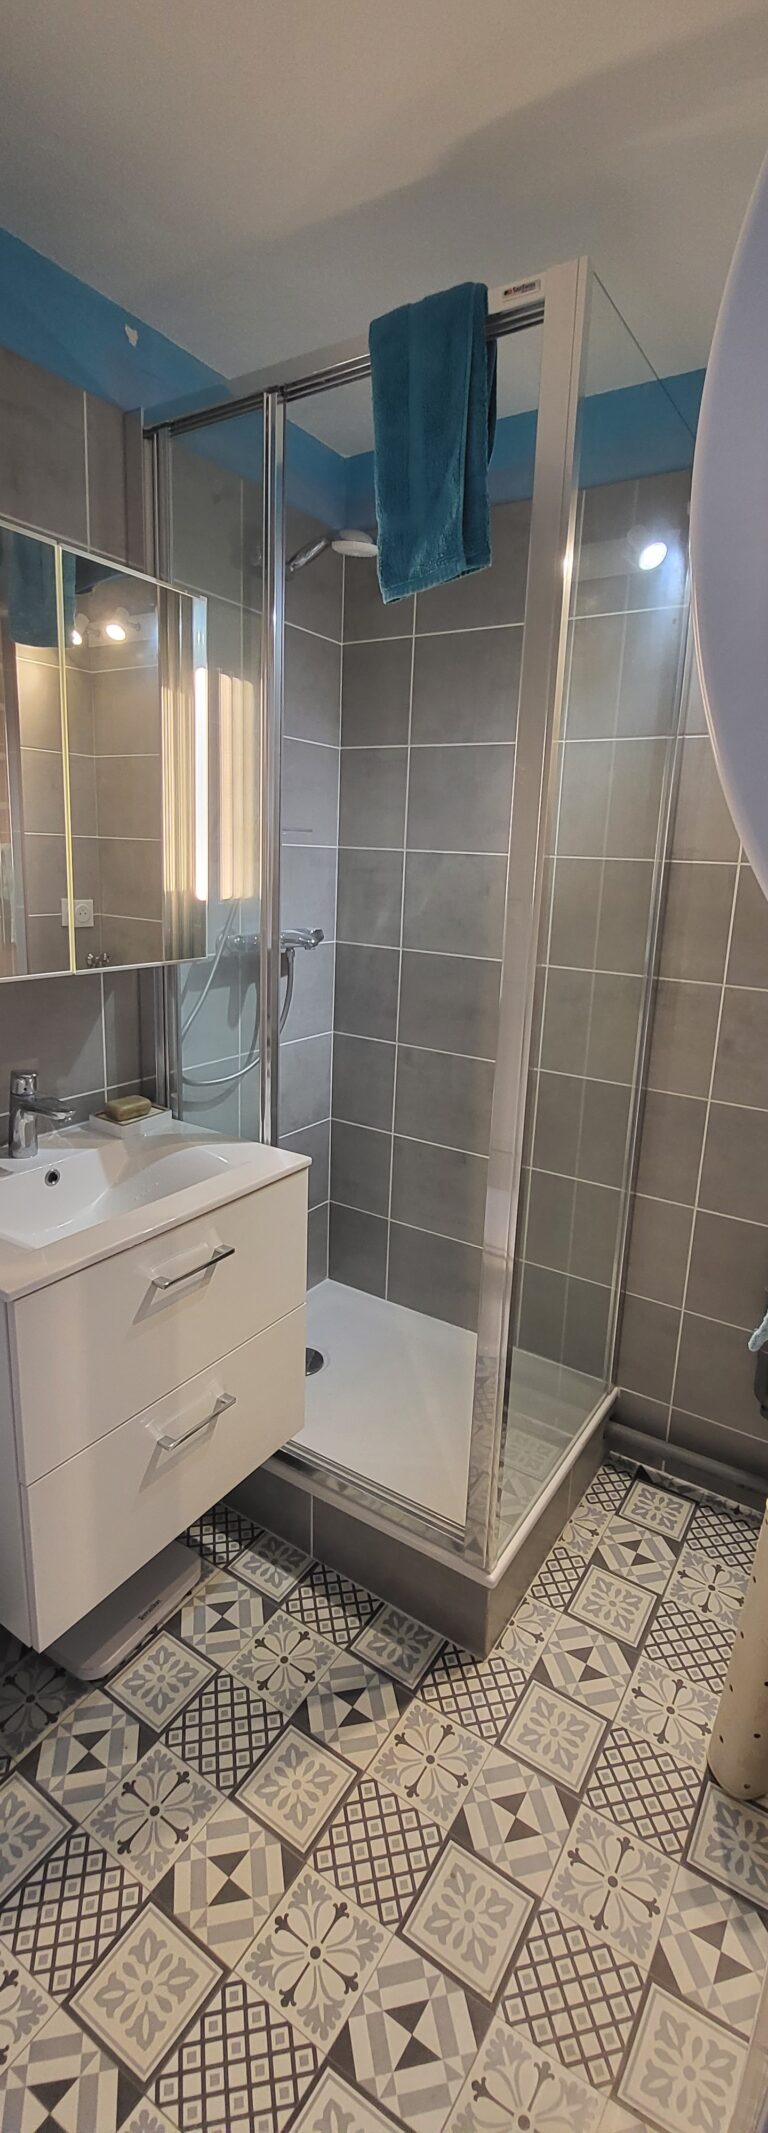 Salle de douche – Inspiration grise et blanche.